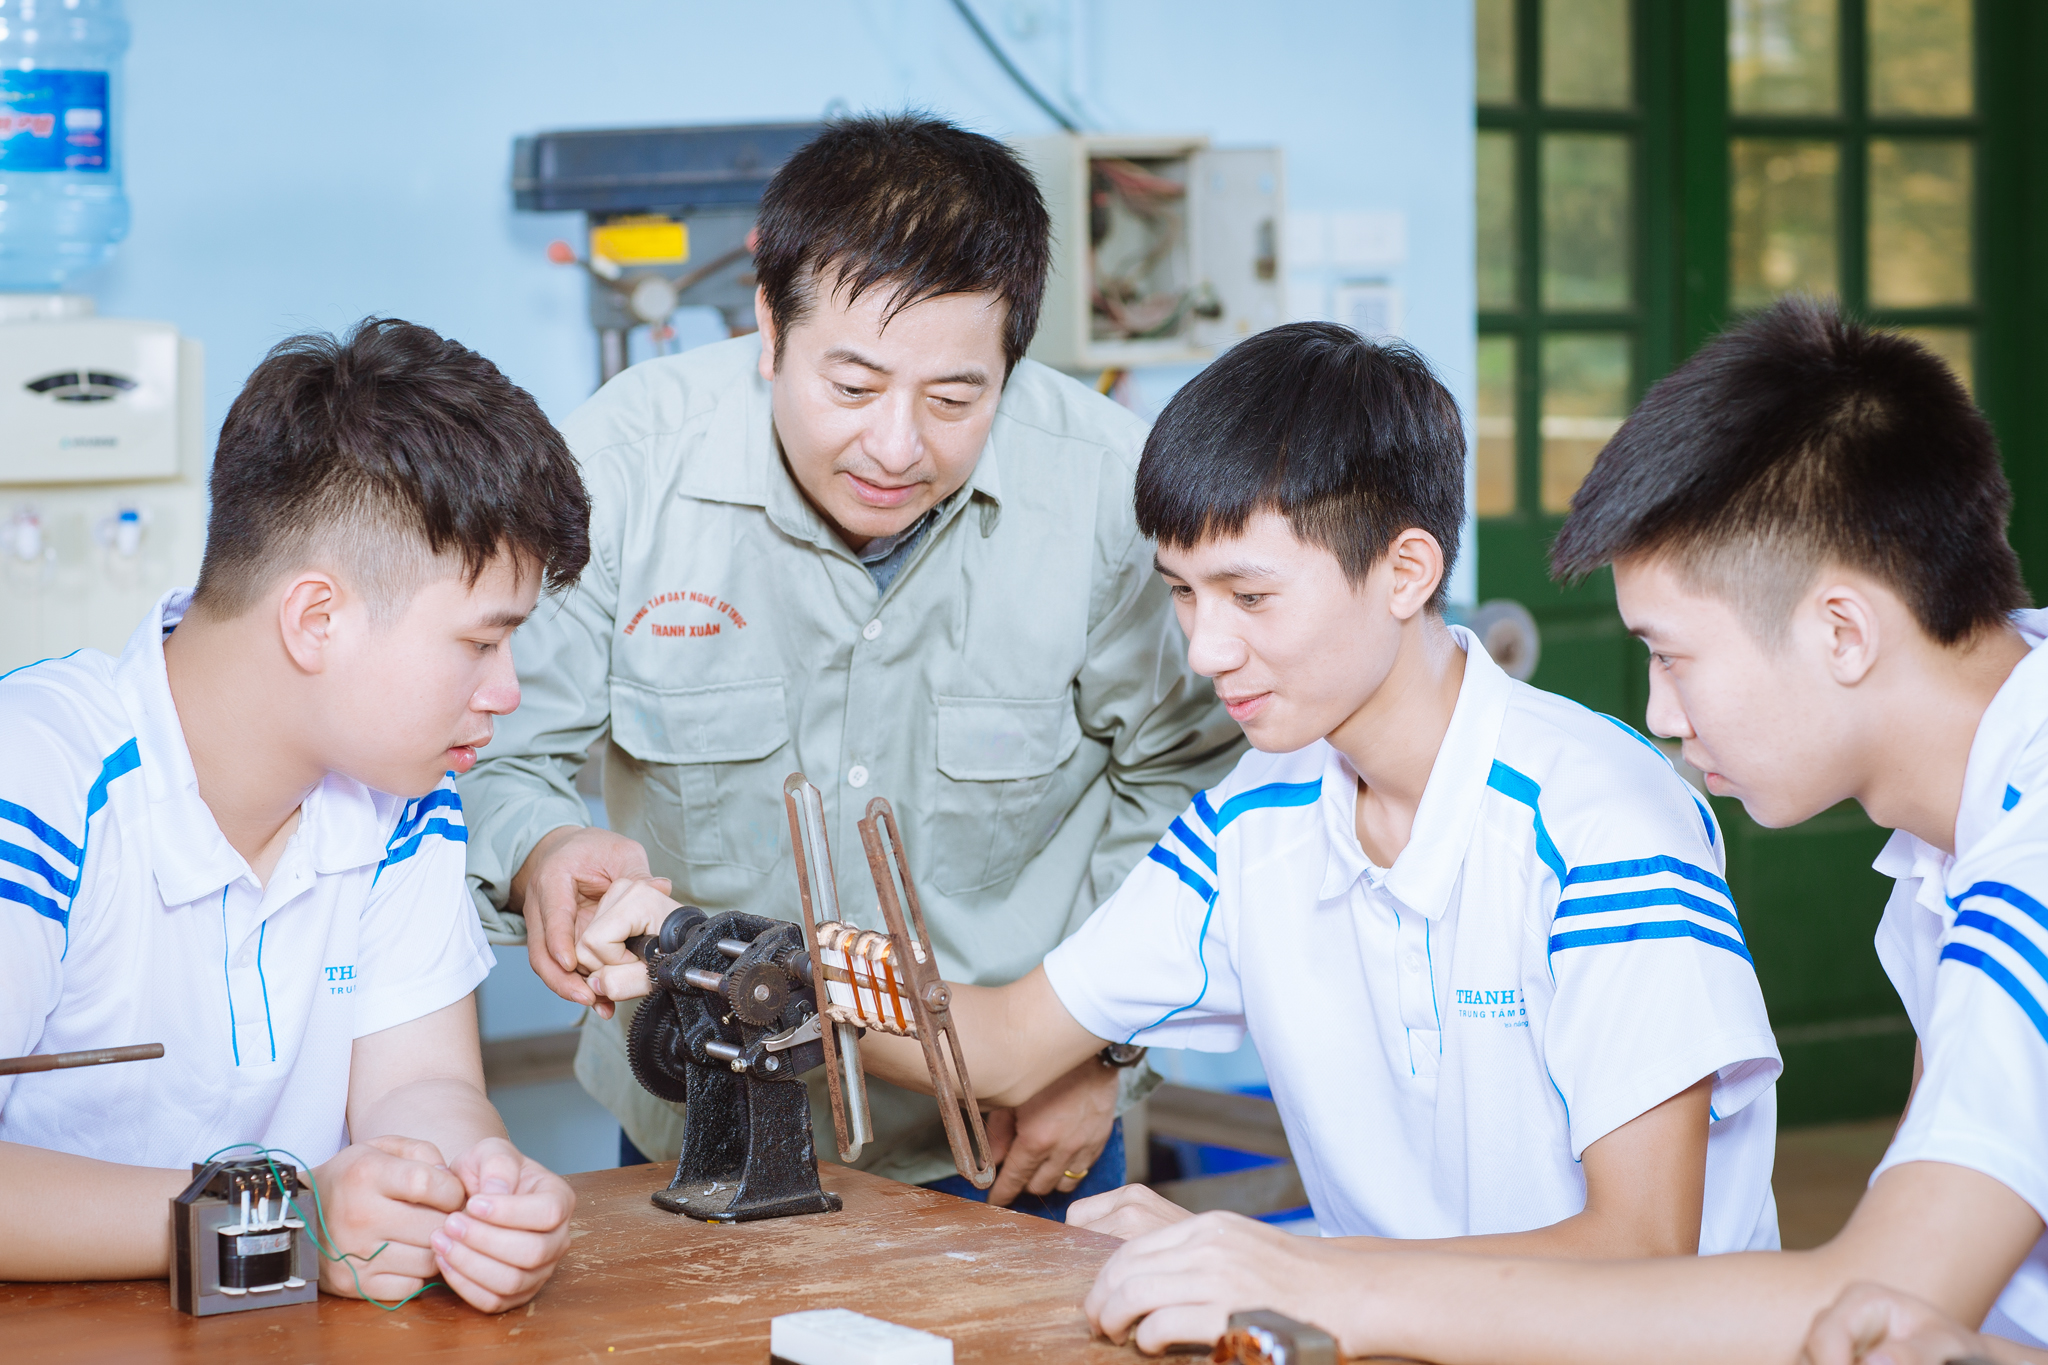 Danh sách các trường dạy nghề ở Hà Nội mà bạn có thể tham khảo